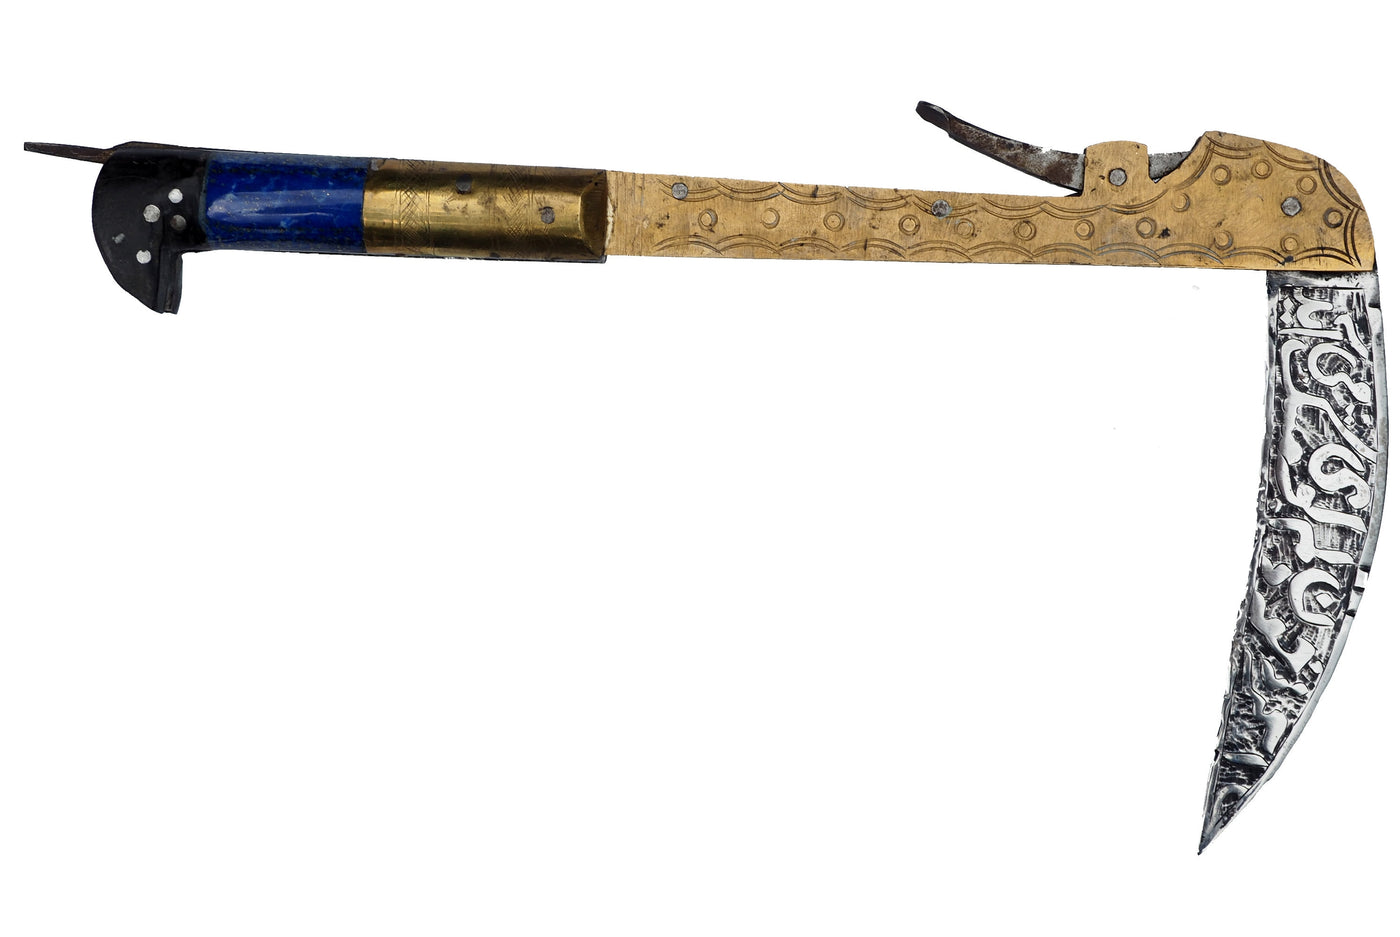 32 cm Messer Dolch choora dagger lohar Khybe messer Klappsense klappmesser Sense mit Lapis Lazuli Griff  aus Afghanistan Pakistan  Nr:21/A  Orientsbazar   